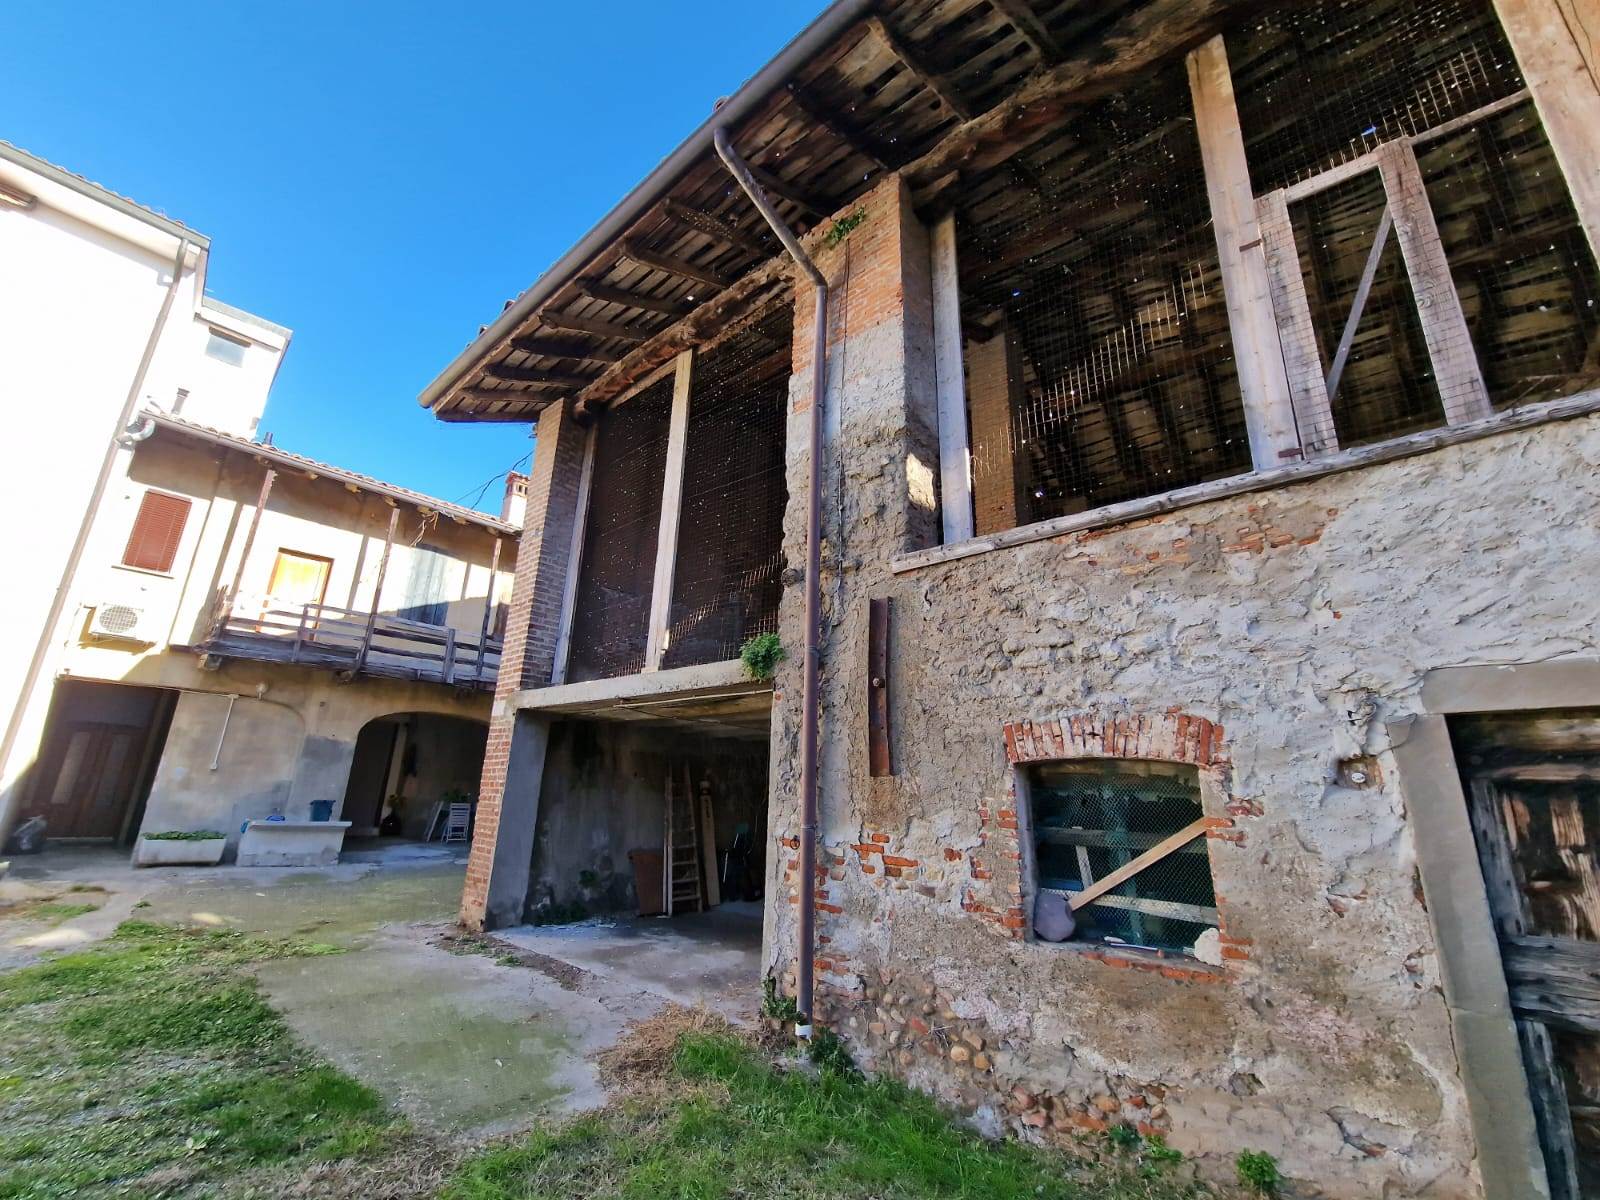 Rustico / Casale in vendita a Levate, 3 locali, prezzo € 49.000 | PortaleAgenzieImmobiliari.it